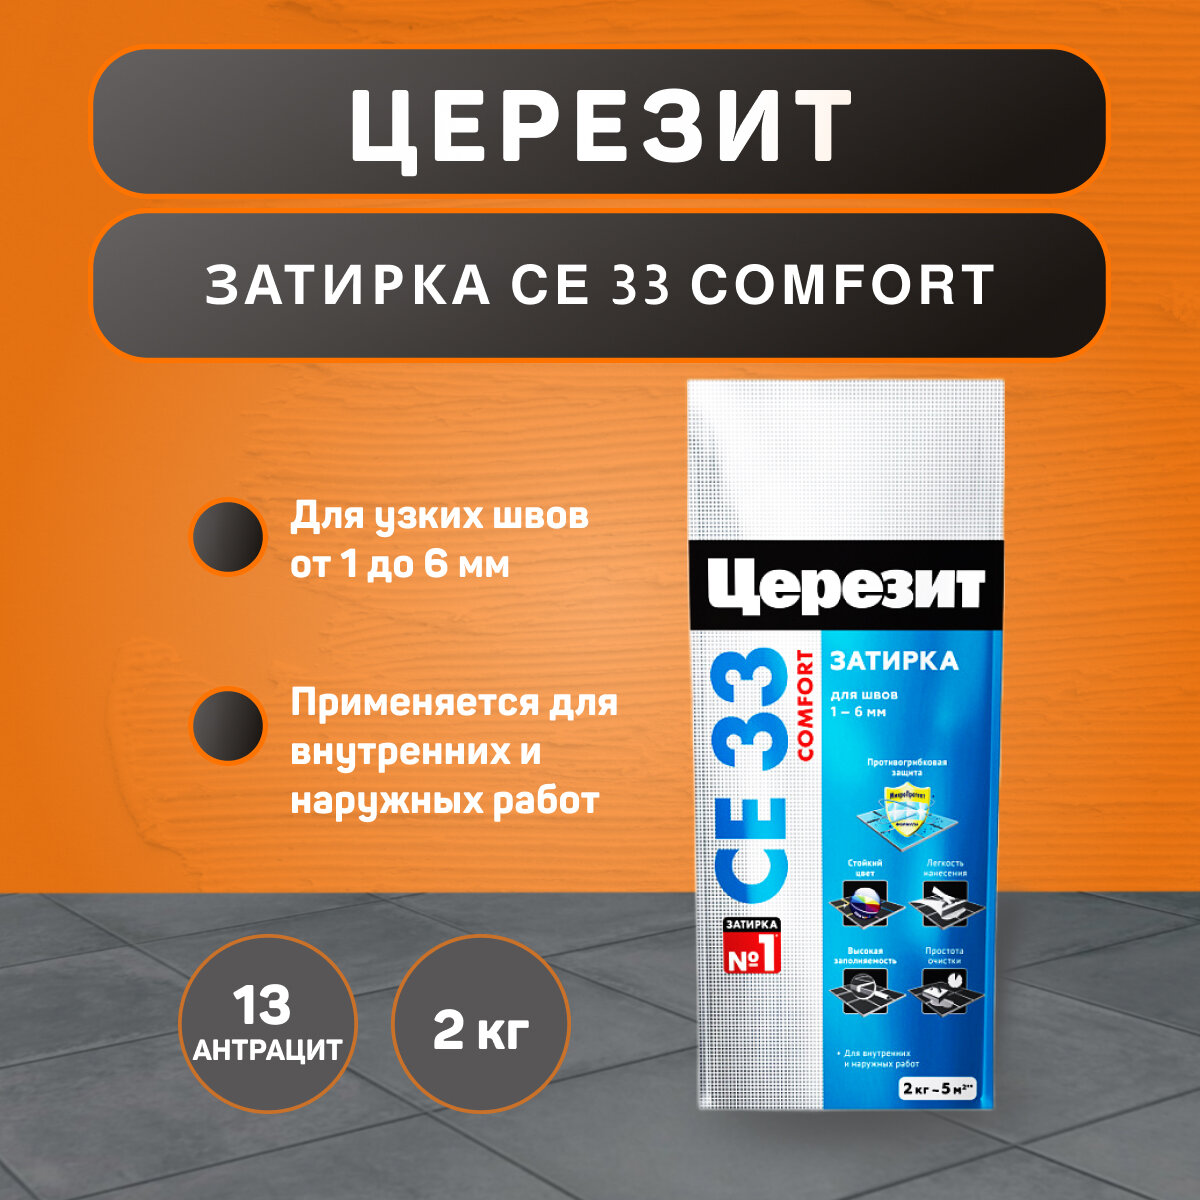 Затирка Ceresit CE 33 Comfort №13 антрацит 2 кг